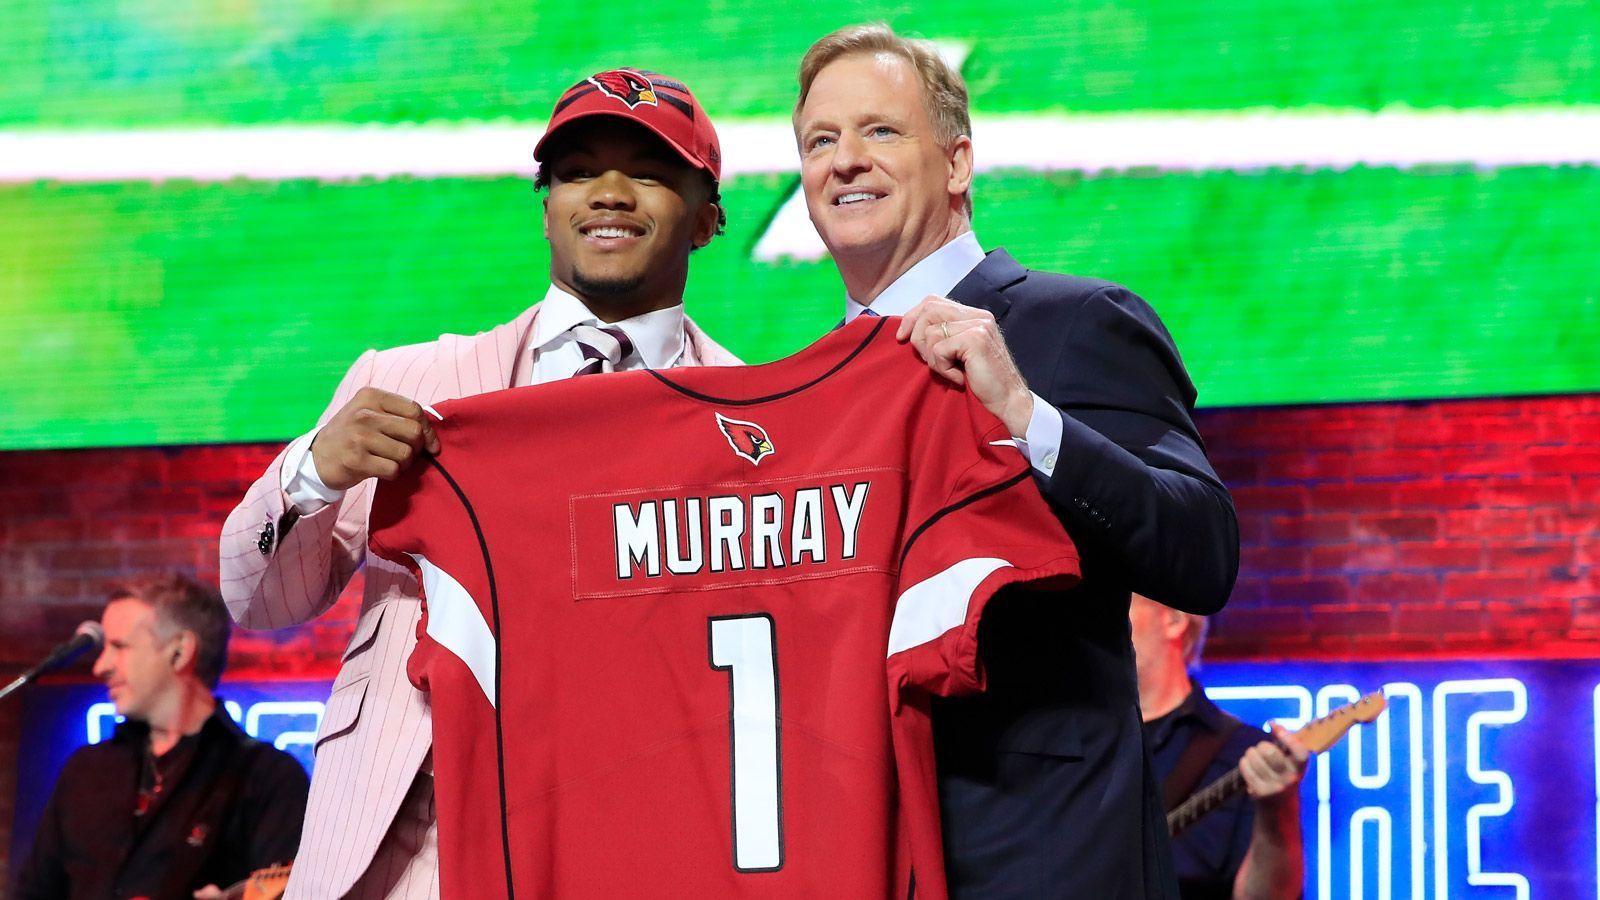 
                <strong>Draft 2019: Diese Spieler wurden ausgewählt</strong><br>
                Die erste Runde des NFL-Drafts 2019 ist Geschichte. Mit dem ersten Pick wählten die Arizona Cardinals tatsächlich Quarterback Kyler Murray aus. ran.de zeigt, welche Spieler von welchen Teams gepickt worden sind.
              